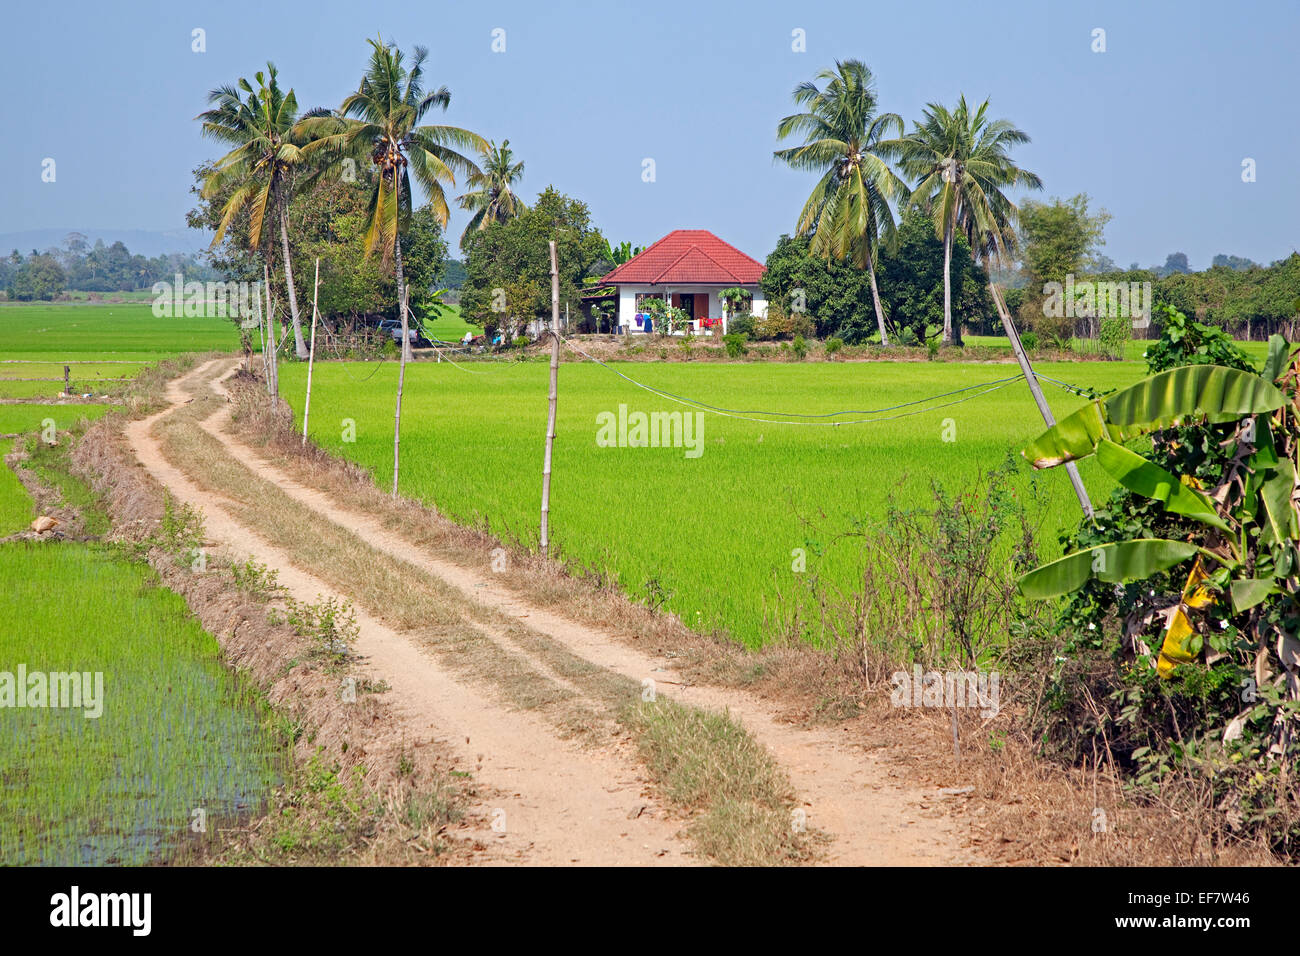 Verdi campi di riso e palme con una moderna casa tailandese sul paesaggio, Uthai Thani Provincia Nord della Thailandia Foto Stock